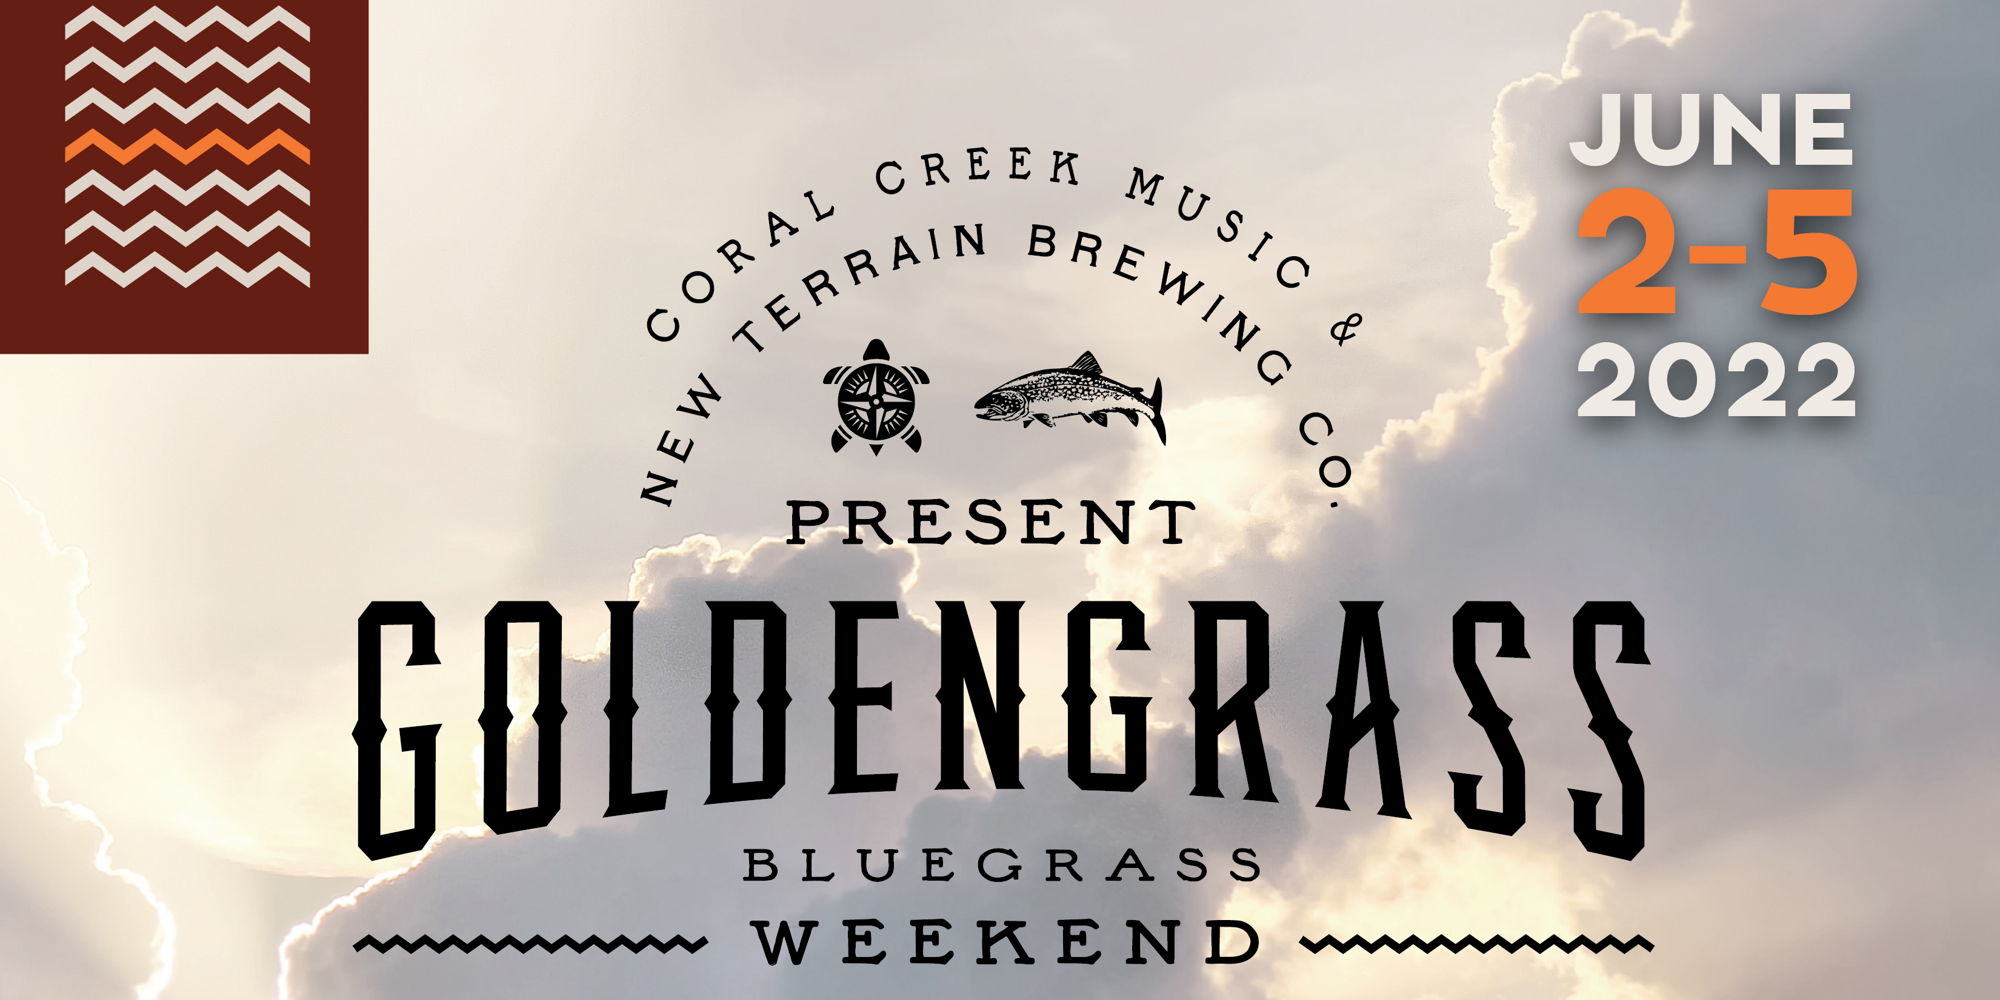 Goldengrass Bluegrass Weekend at New Terrain promotional image